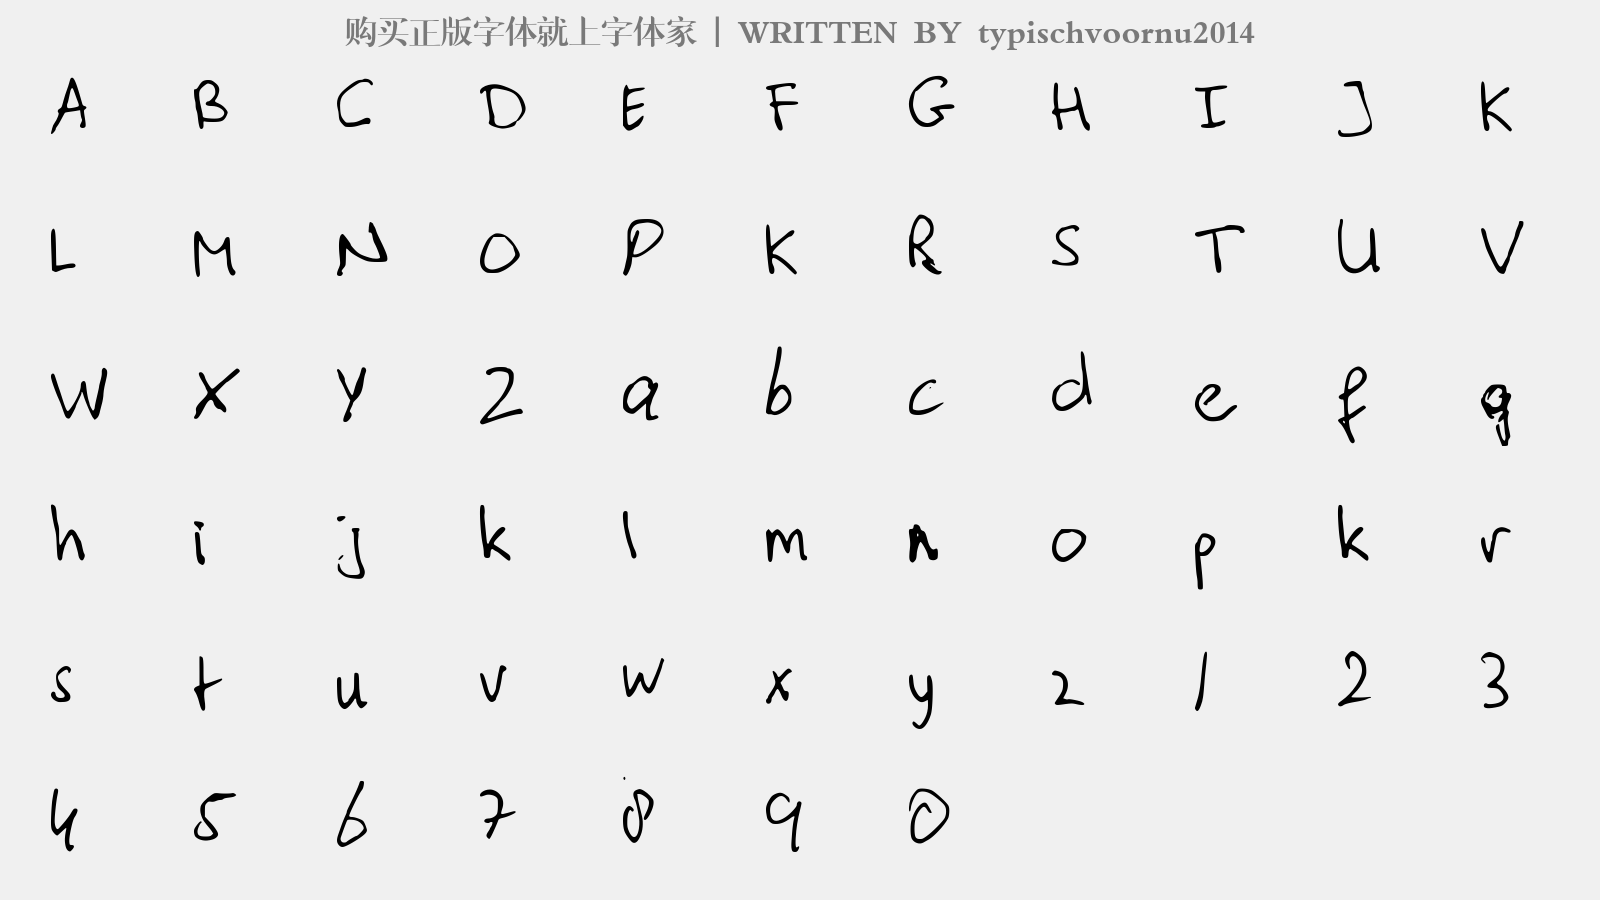 typischvoornu2014 - 大写字母/小写字母/数字